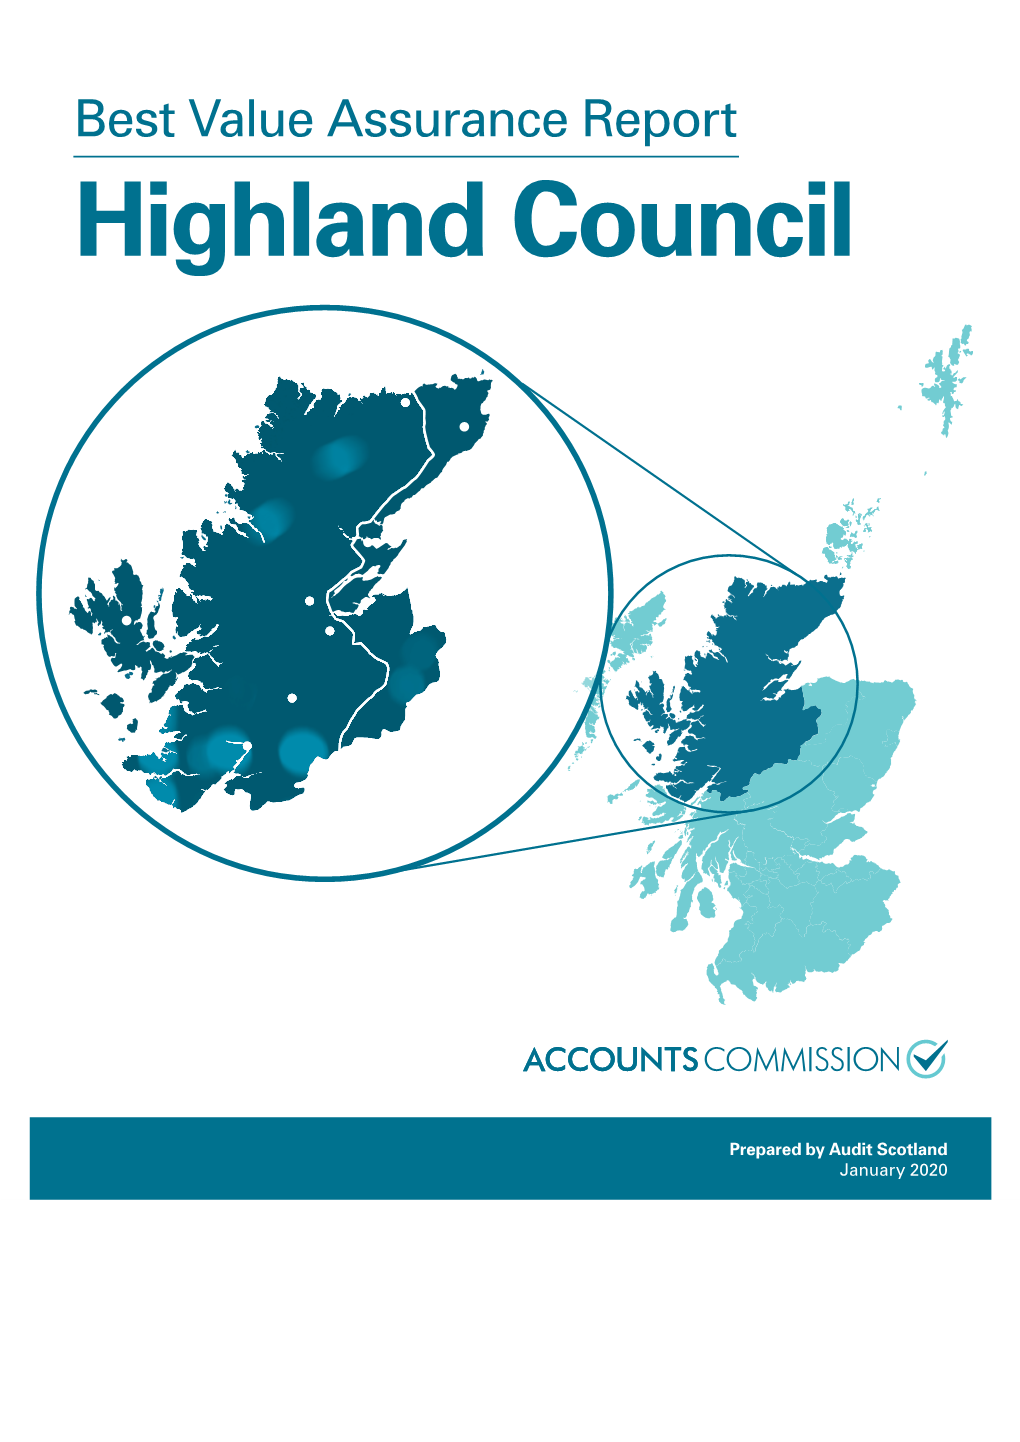 Highland Council: Best Value Assurance Report